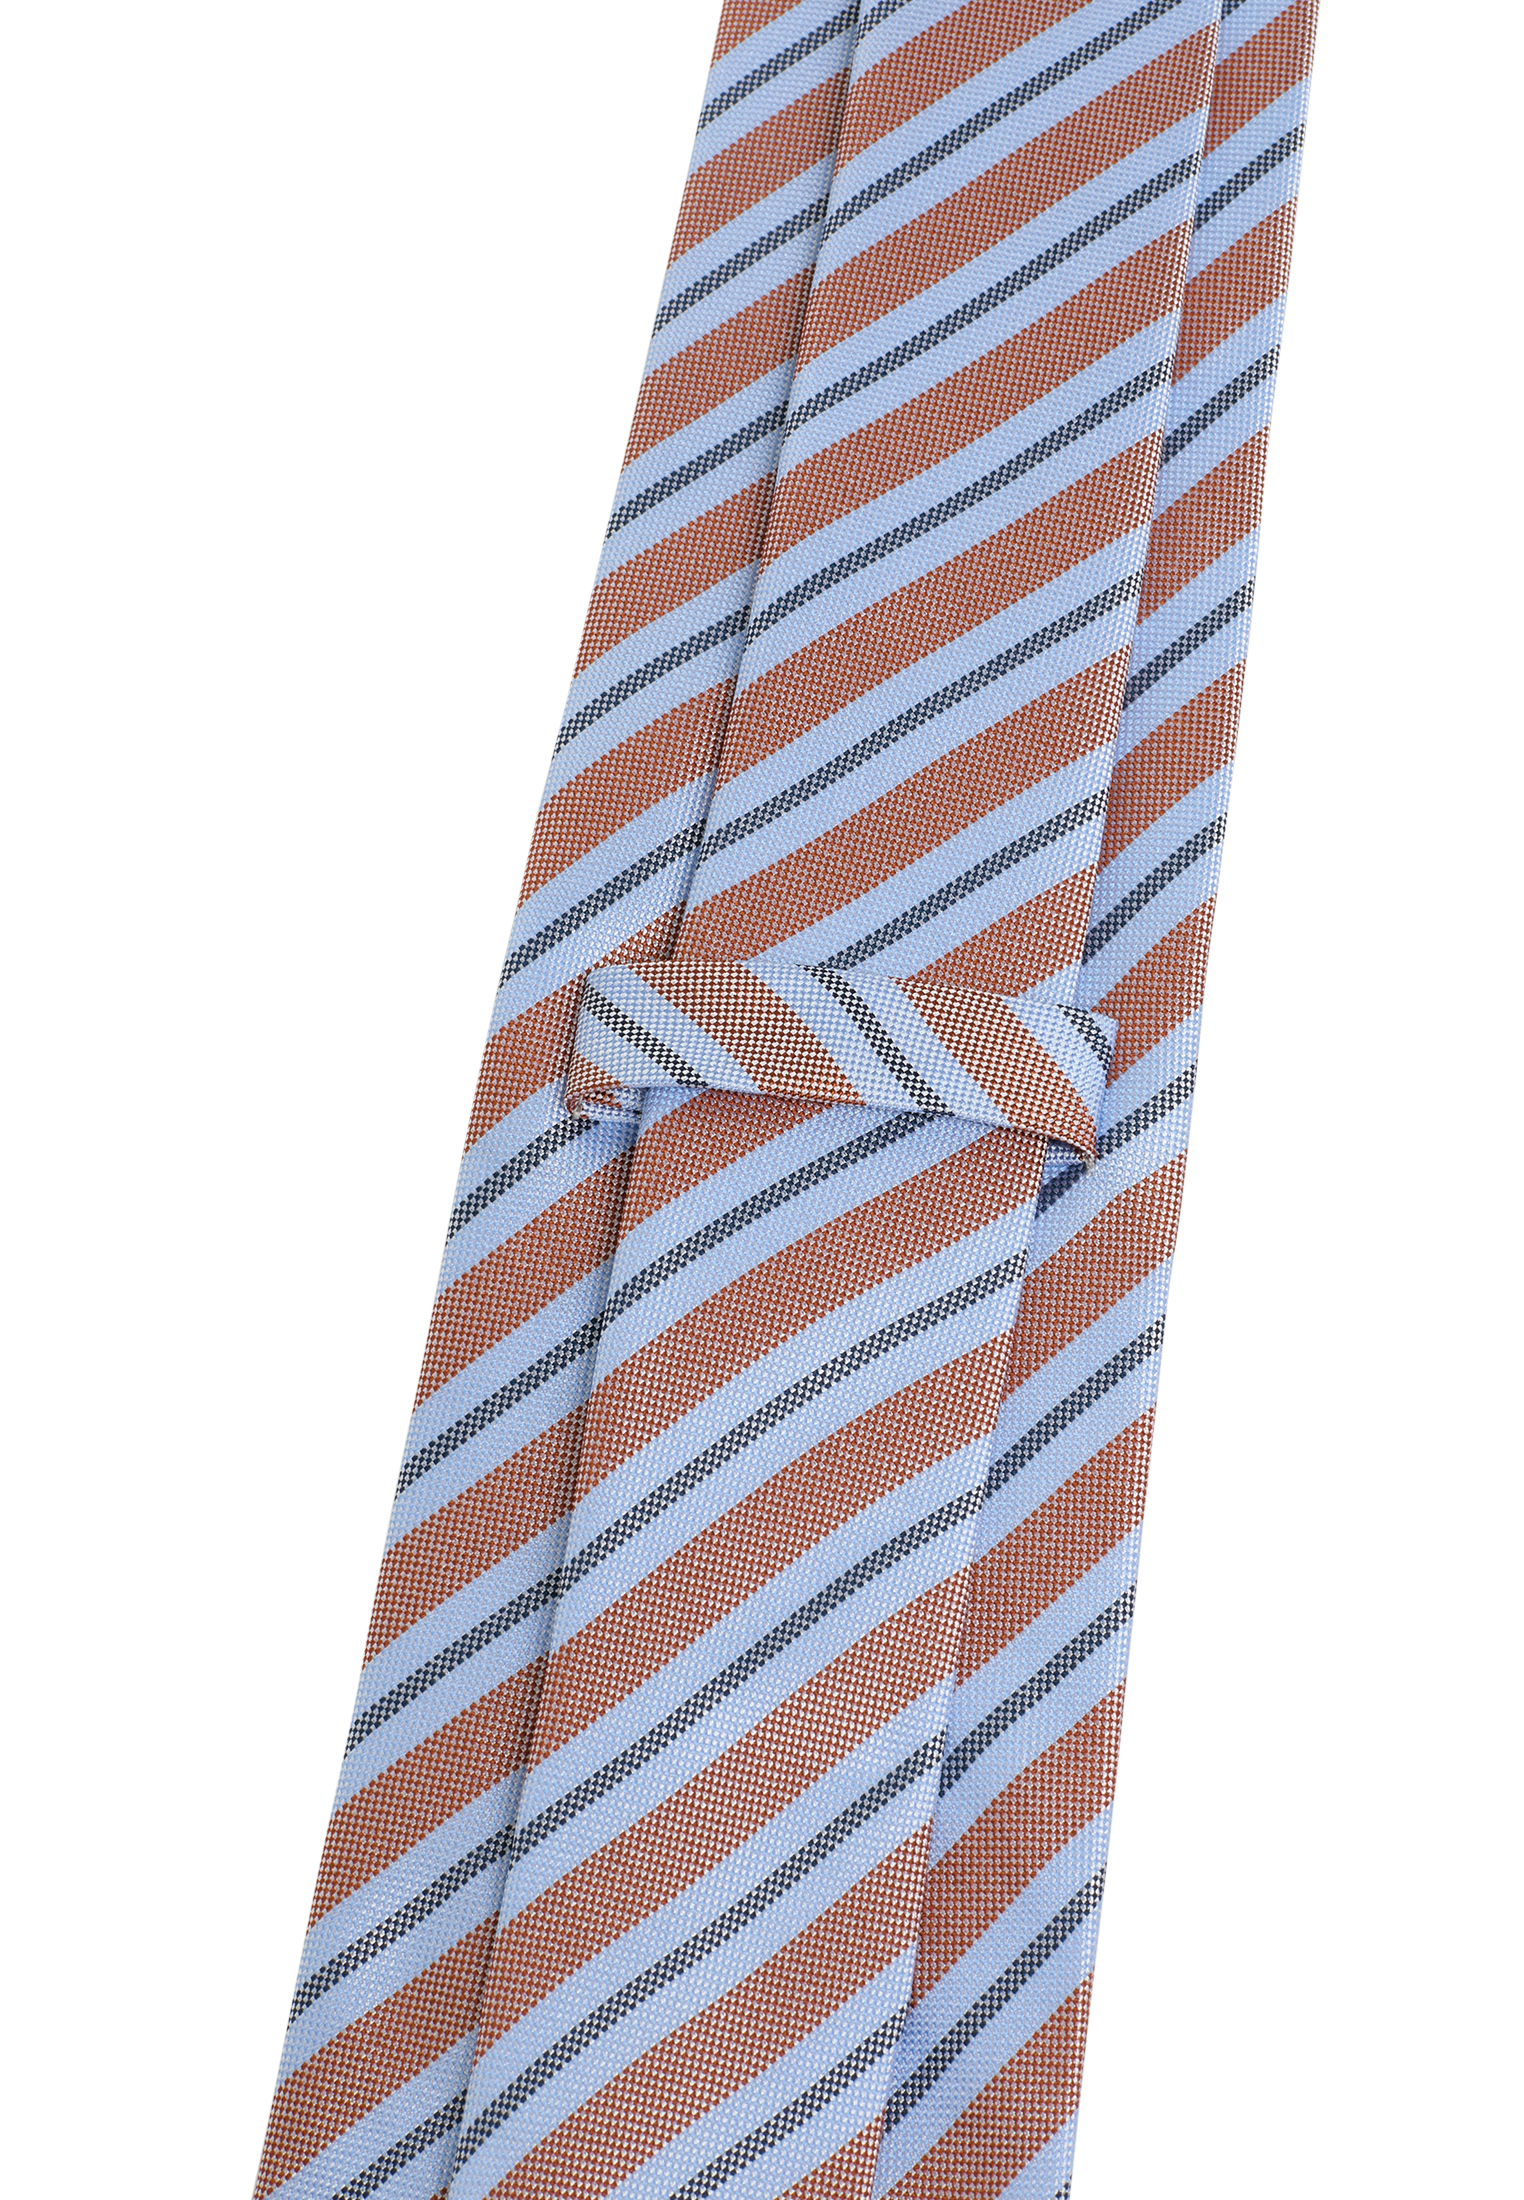 Krawatte in hellblau/orange | | hellblau/orange | 142 gemustert 1AC02006-81-33-142